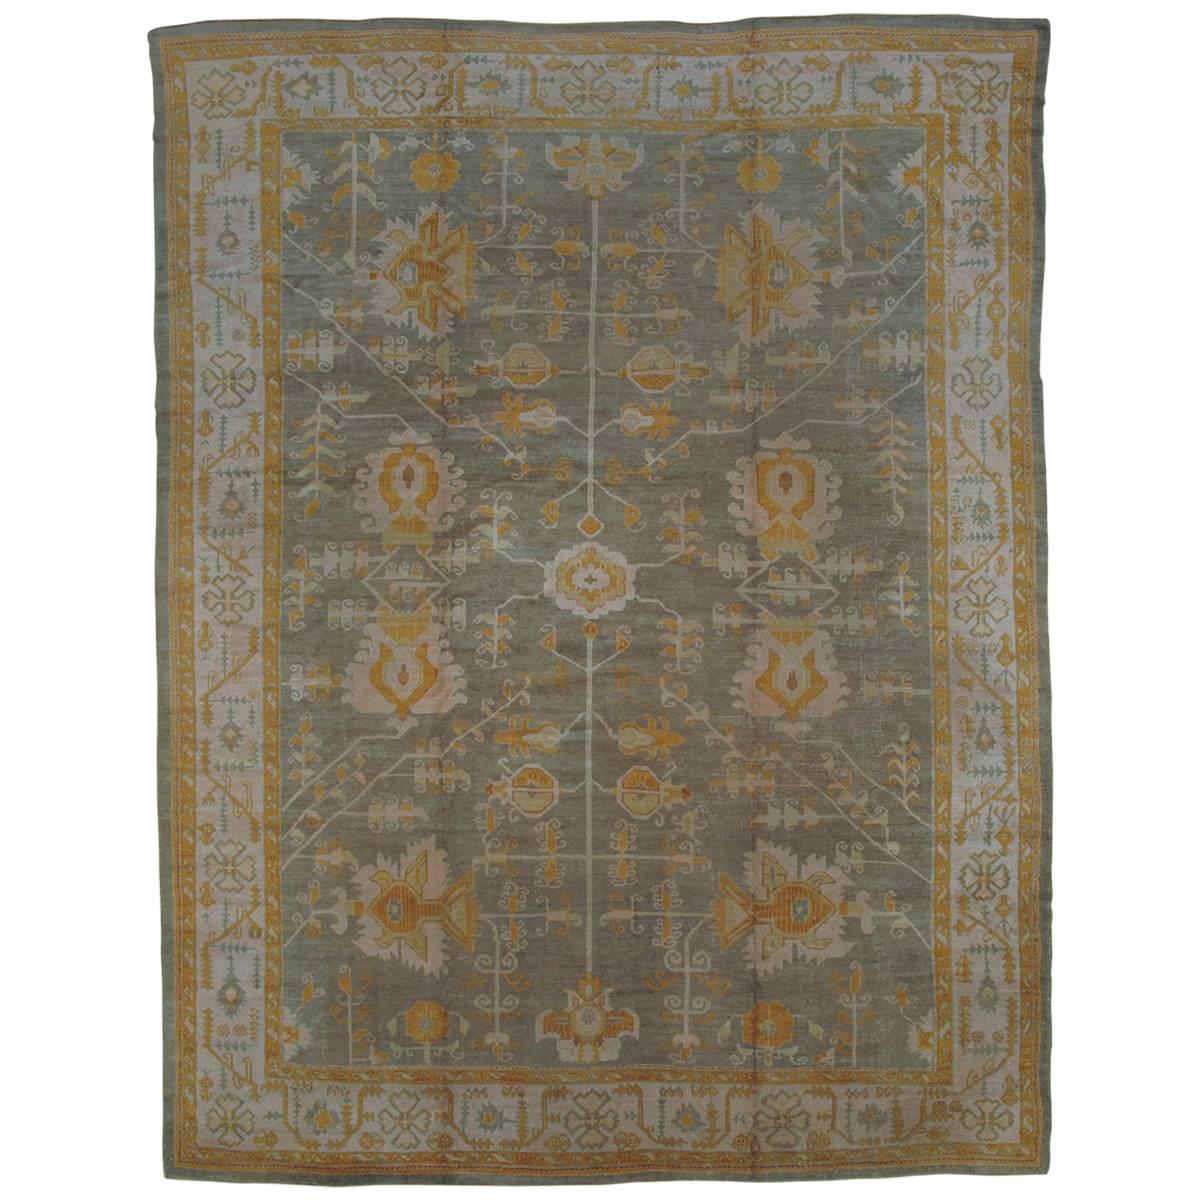 Antiker antiker Oushak-Teppich, Orientteppich, handgefertigt in Grau, Elfenbein, Safran